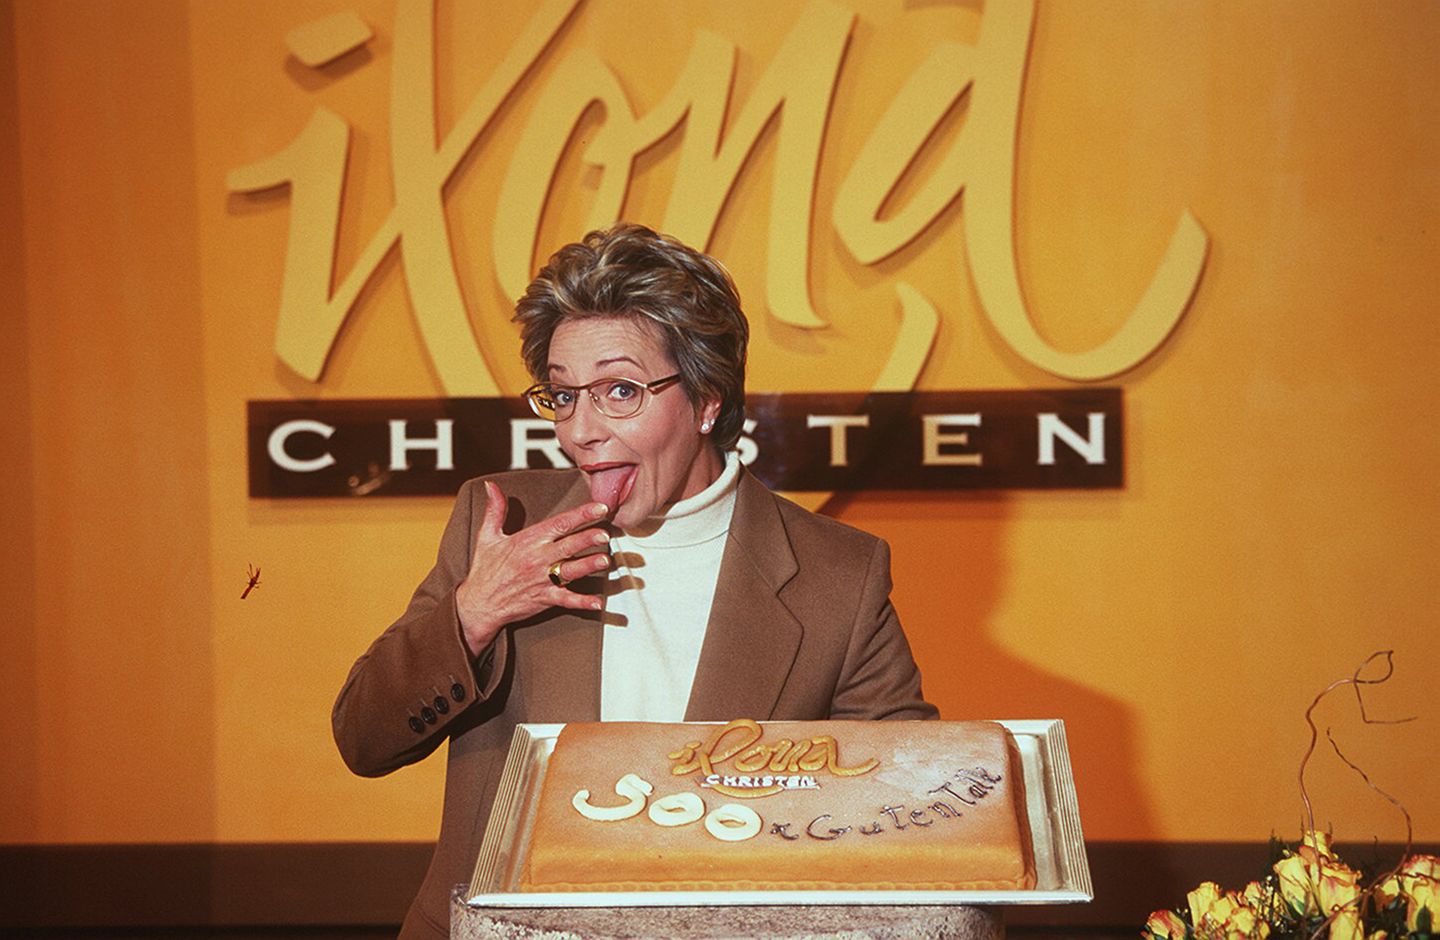 Ilona Christen war die zweite Talkerin in Deutschland. Besonders ihre ausgefallenen, farbenfrohen Brillen dürften in Erinnerung geblieben sein. Ihre gleichnamige Talkshow wurde von 1993 bis 1999 über RTL ausgestrahlt.